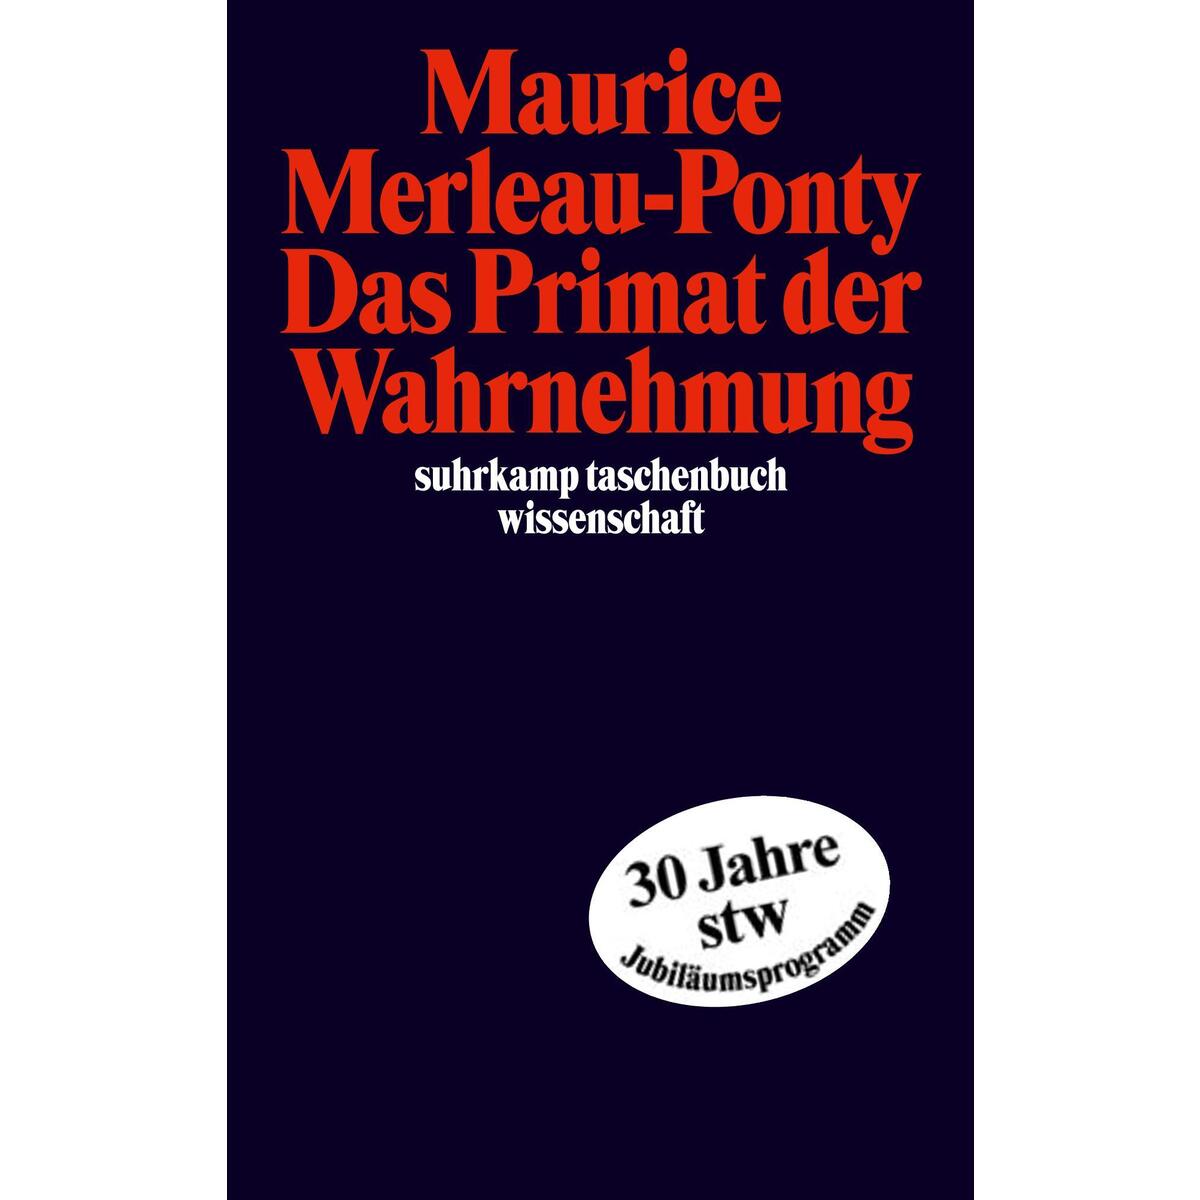 Das Primat der Wahrnehmung von Suhrkamp Verlag AG